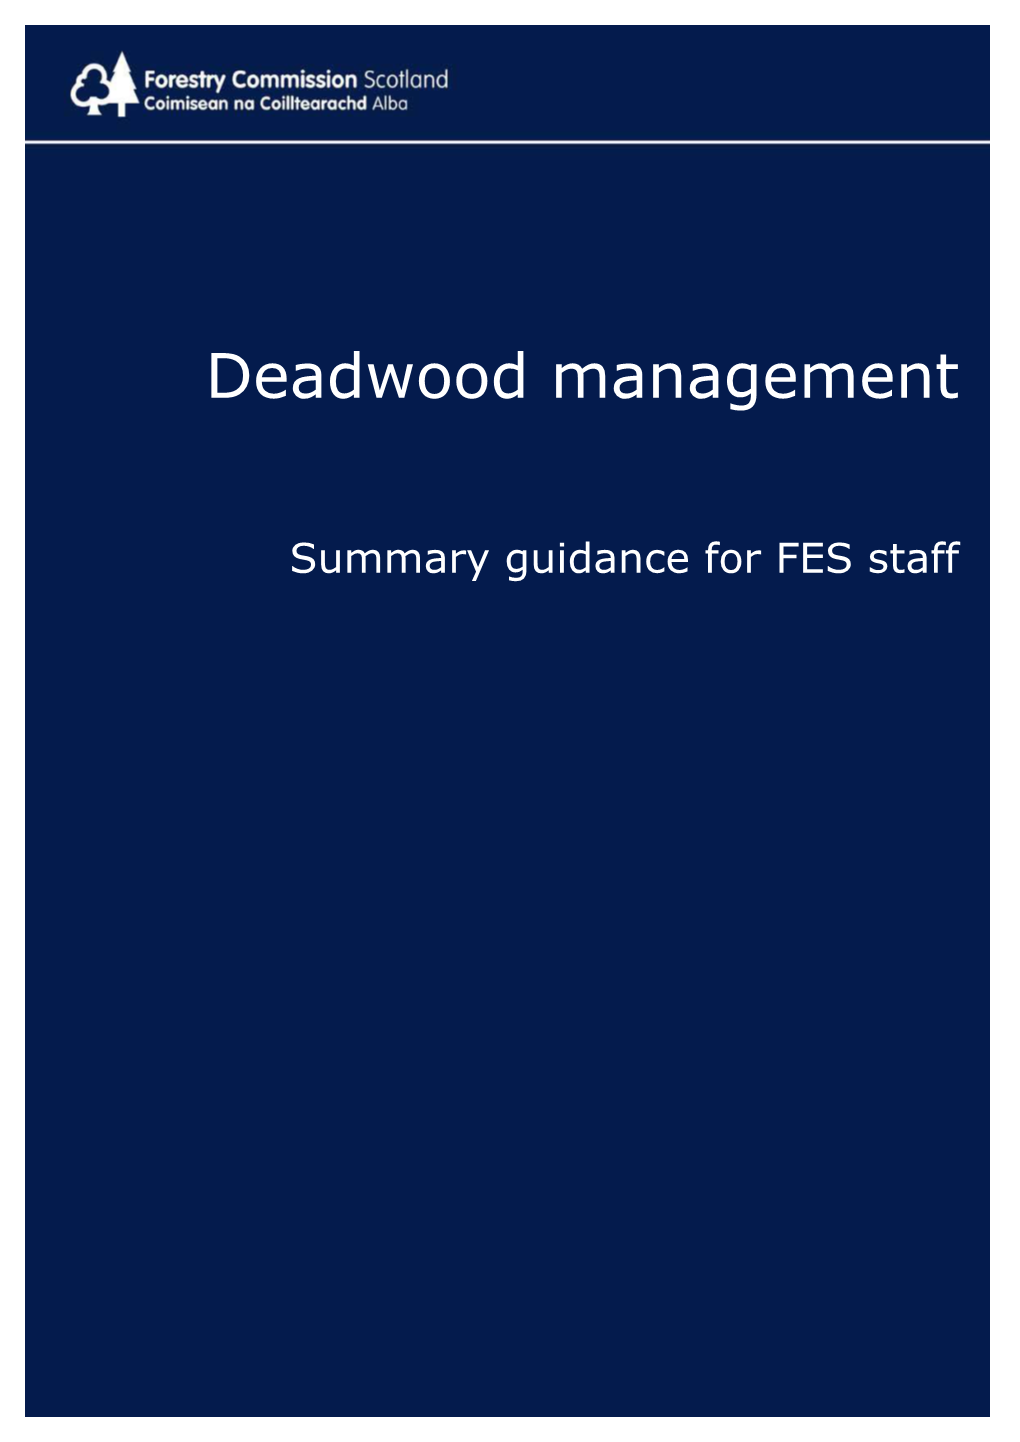 Deadwood Management